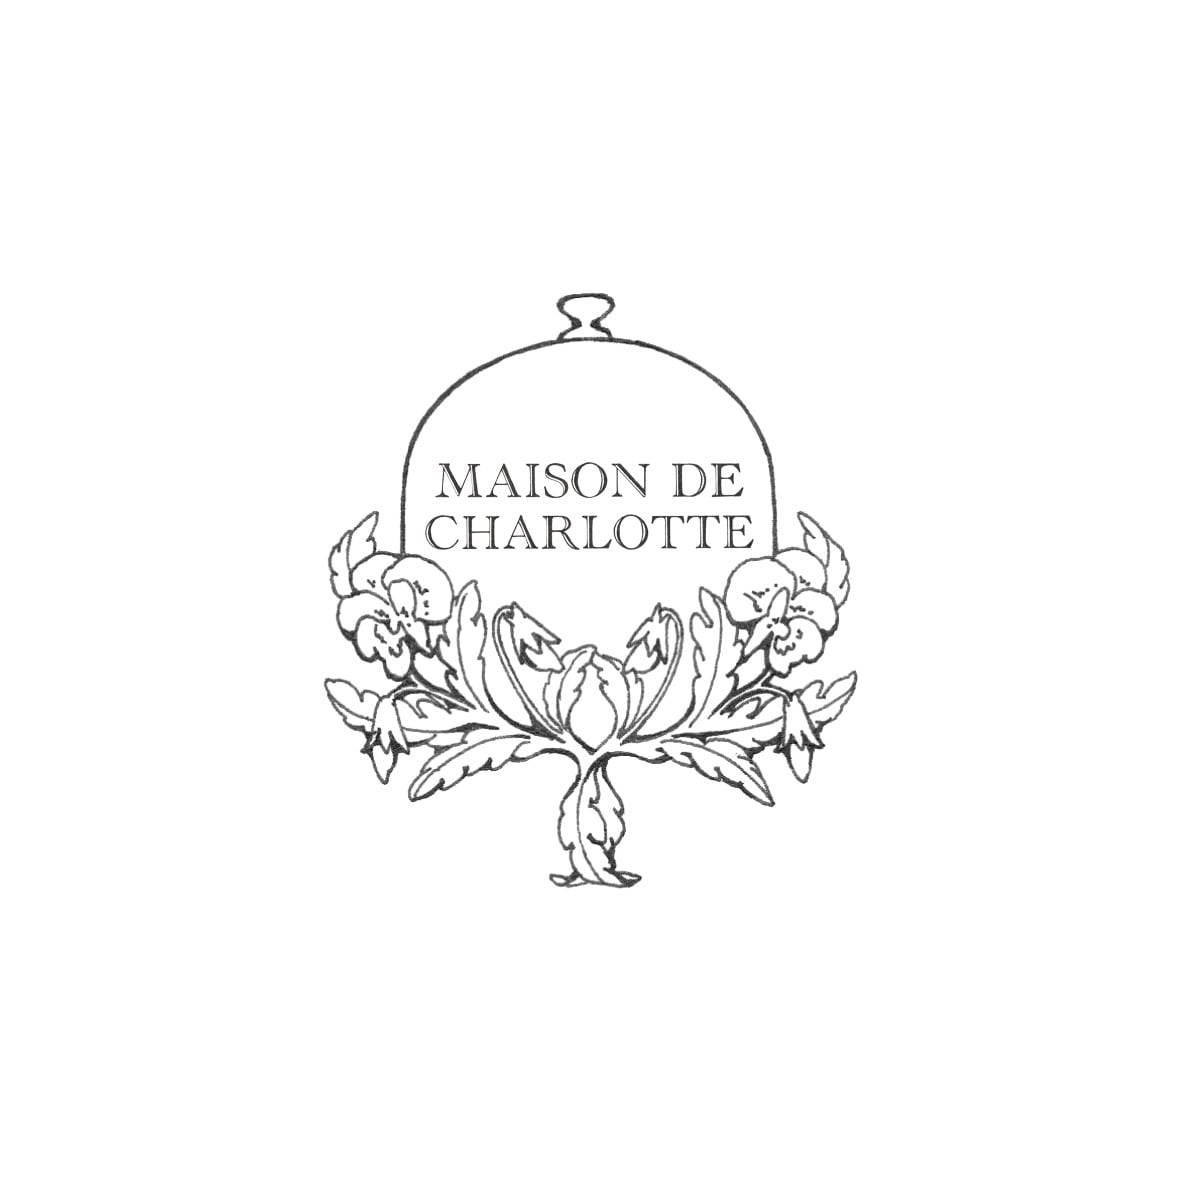 MAISON DE CHARLOTTE